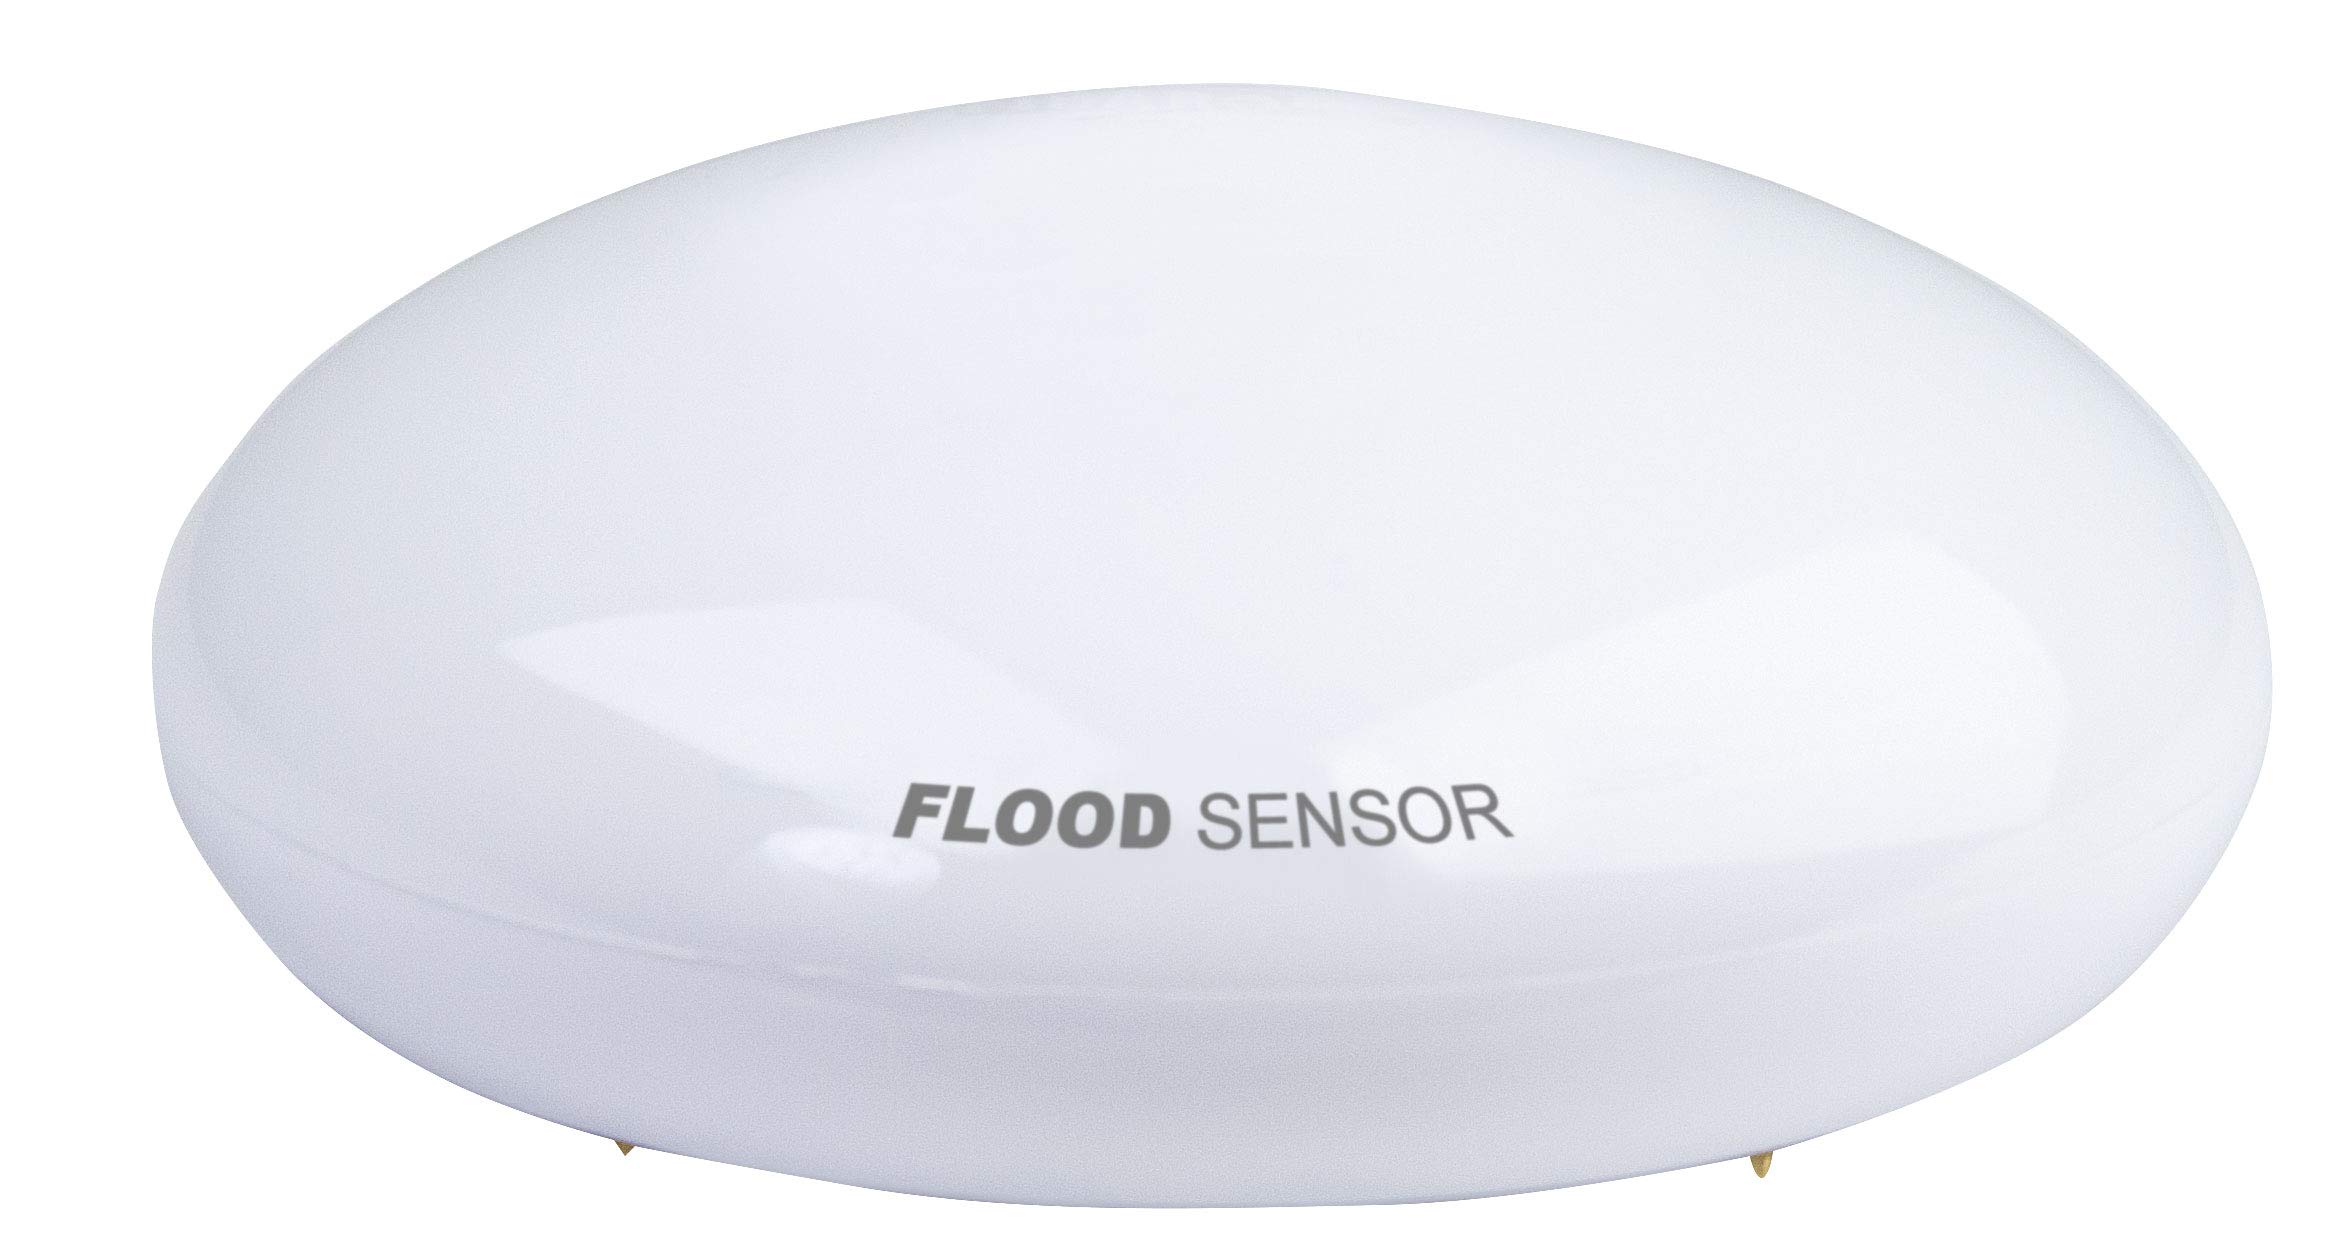 SCHWAIGER -ZHS07- Wassersensor/ Überflutungssensor/ Temperatursensor/ Alarmsirene mit LEDs/ Alarmanlage/ Z-Wave/ Smart Home/ Steuerung per App/ Gateway benötigt